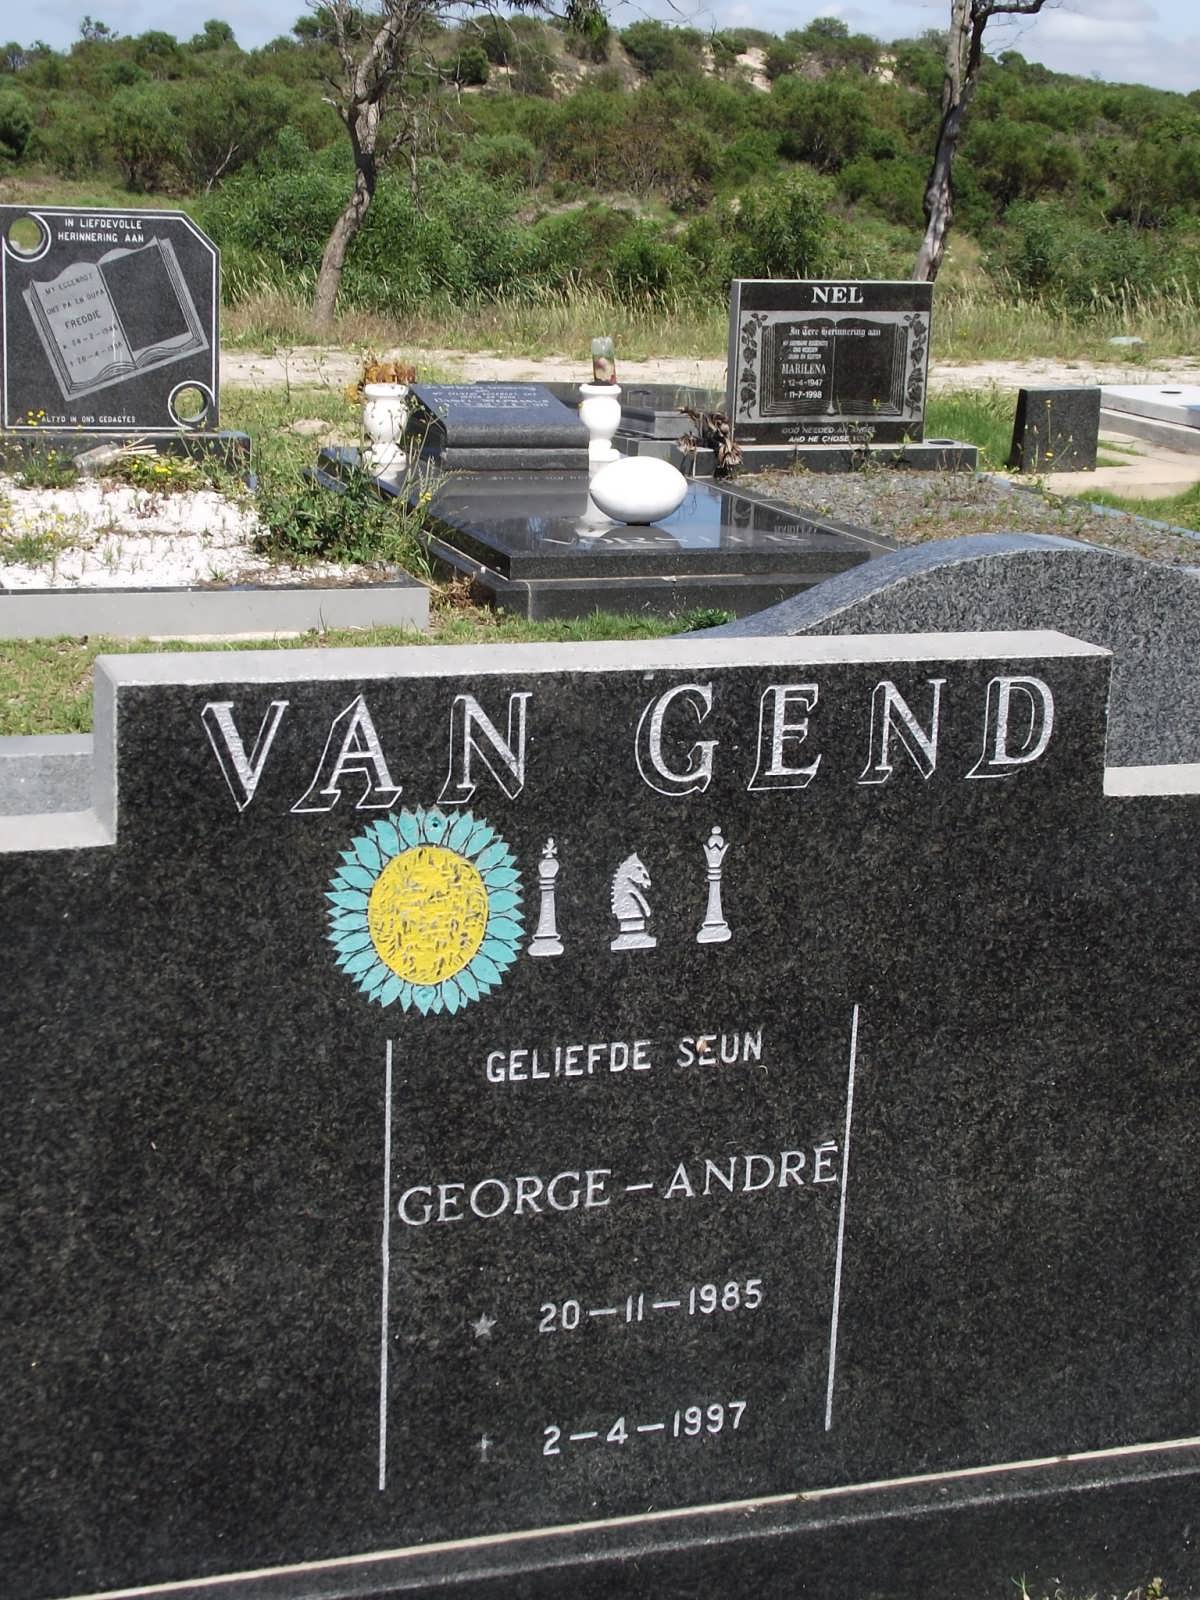 GEND George-André, van 1985-1997